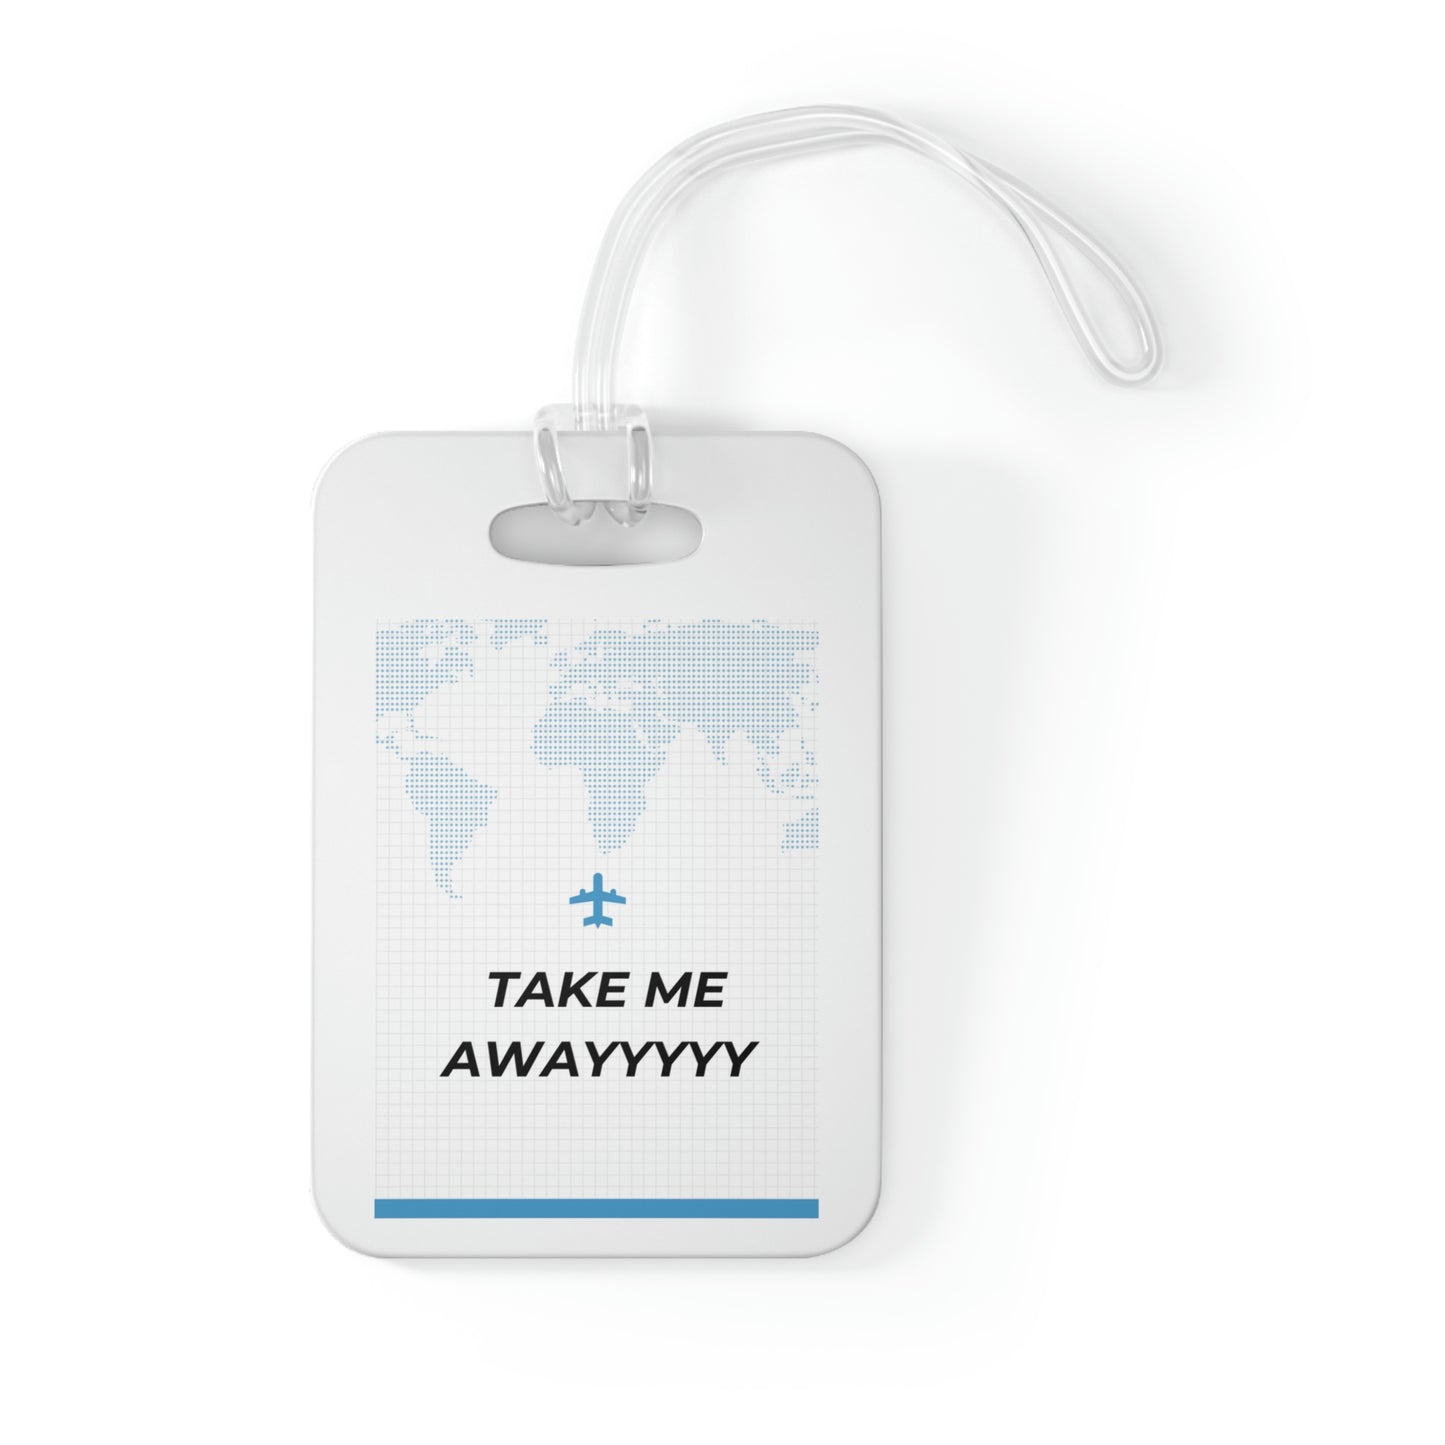 Take me away travel suitcase luggage Bag Tag